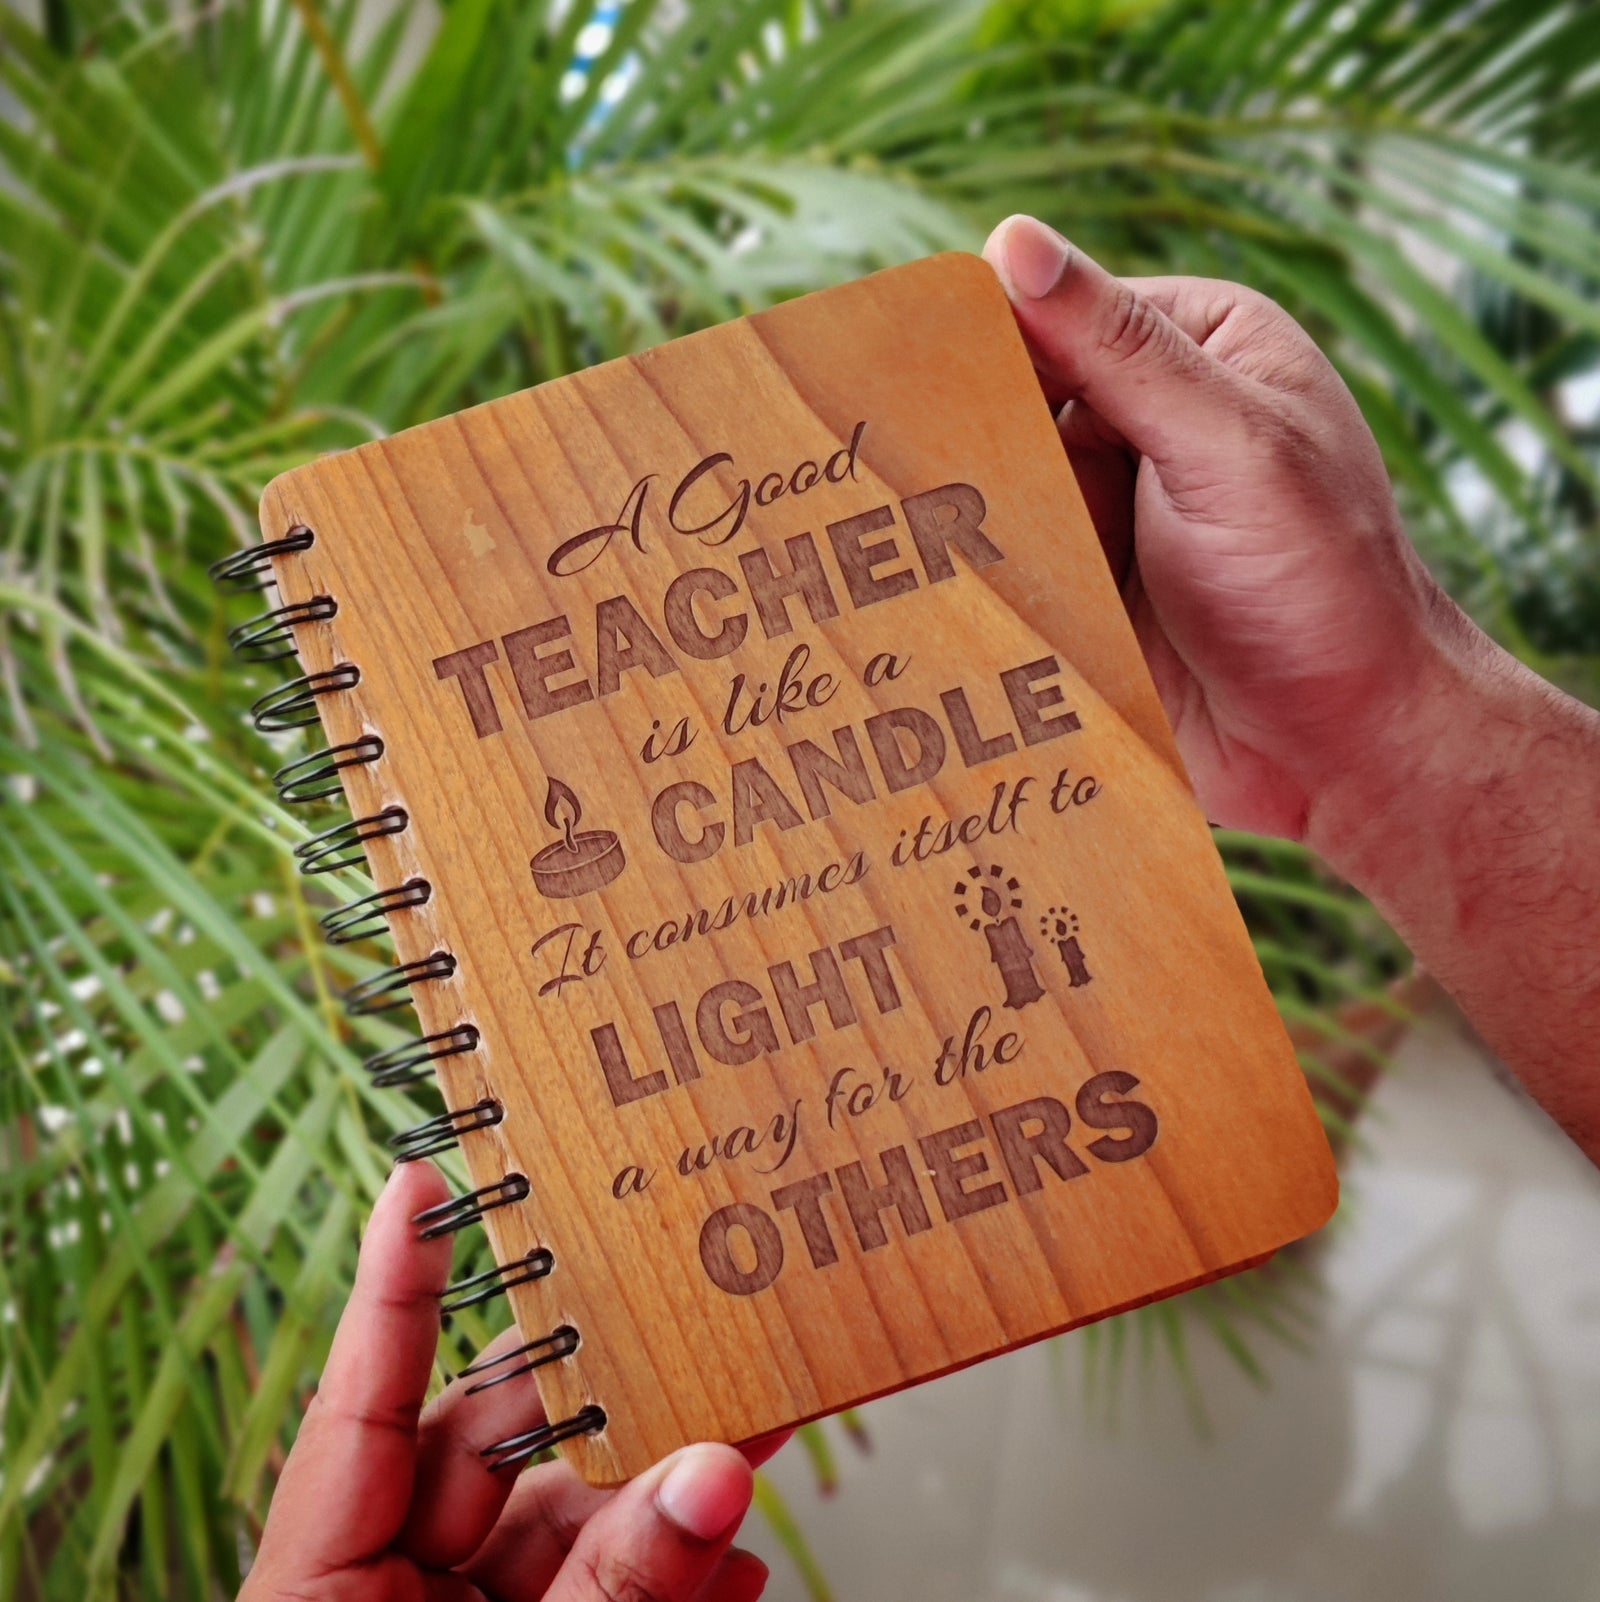 5 Easy & Simple Teacher's Day Gift Ideas | Handmade Gifts for Teachers Day  | Teachers Day Gifts 2021 - YouTube